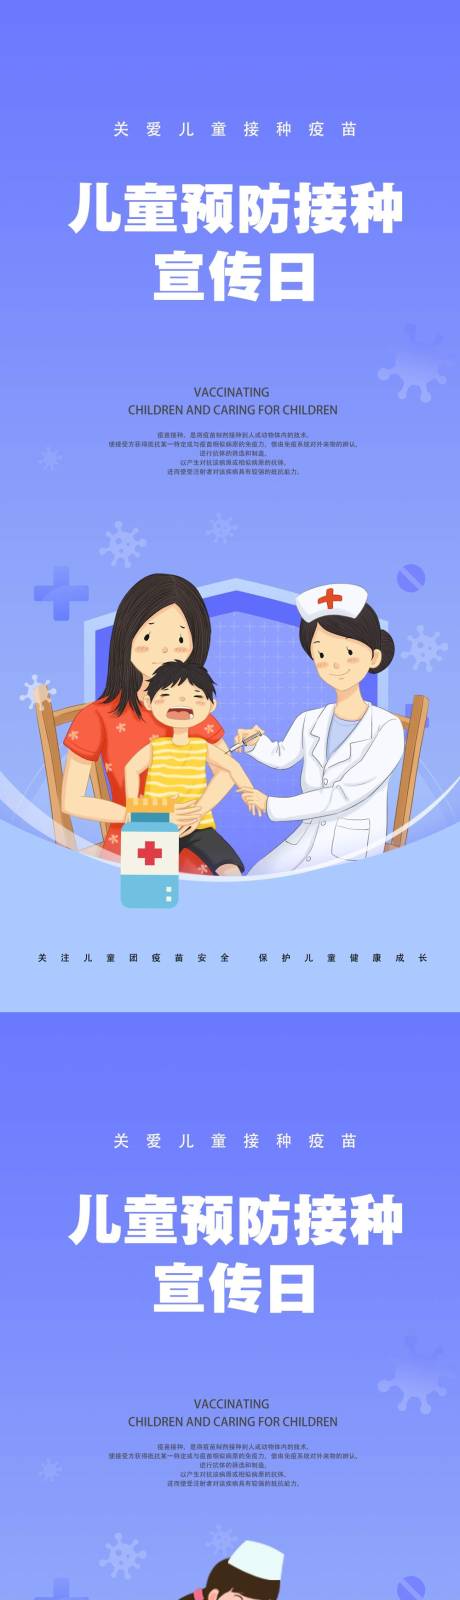 儿童疫苗宣传日节日海报